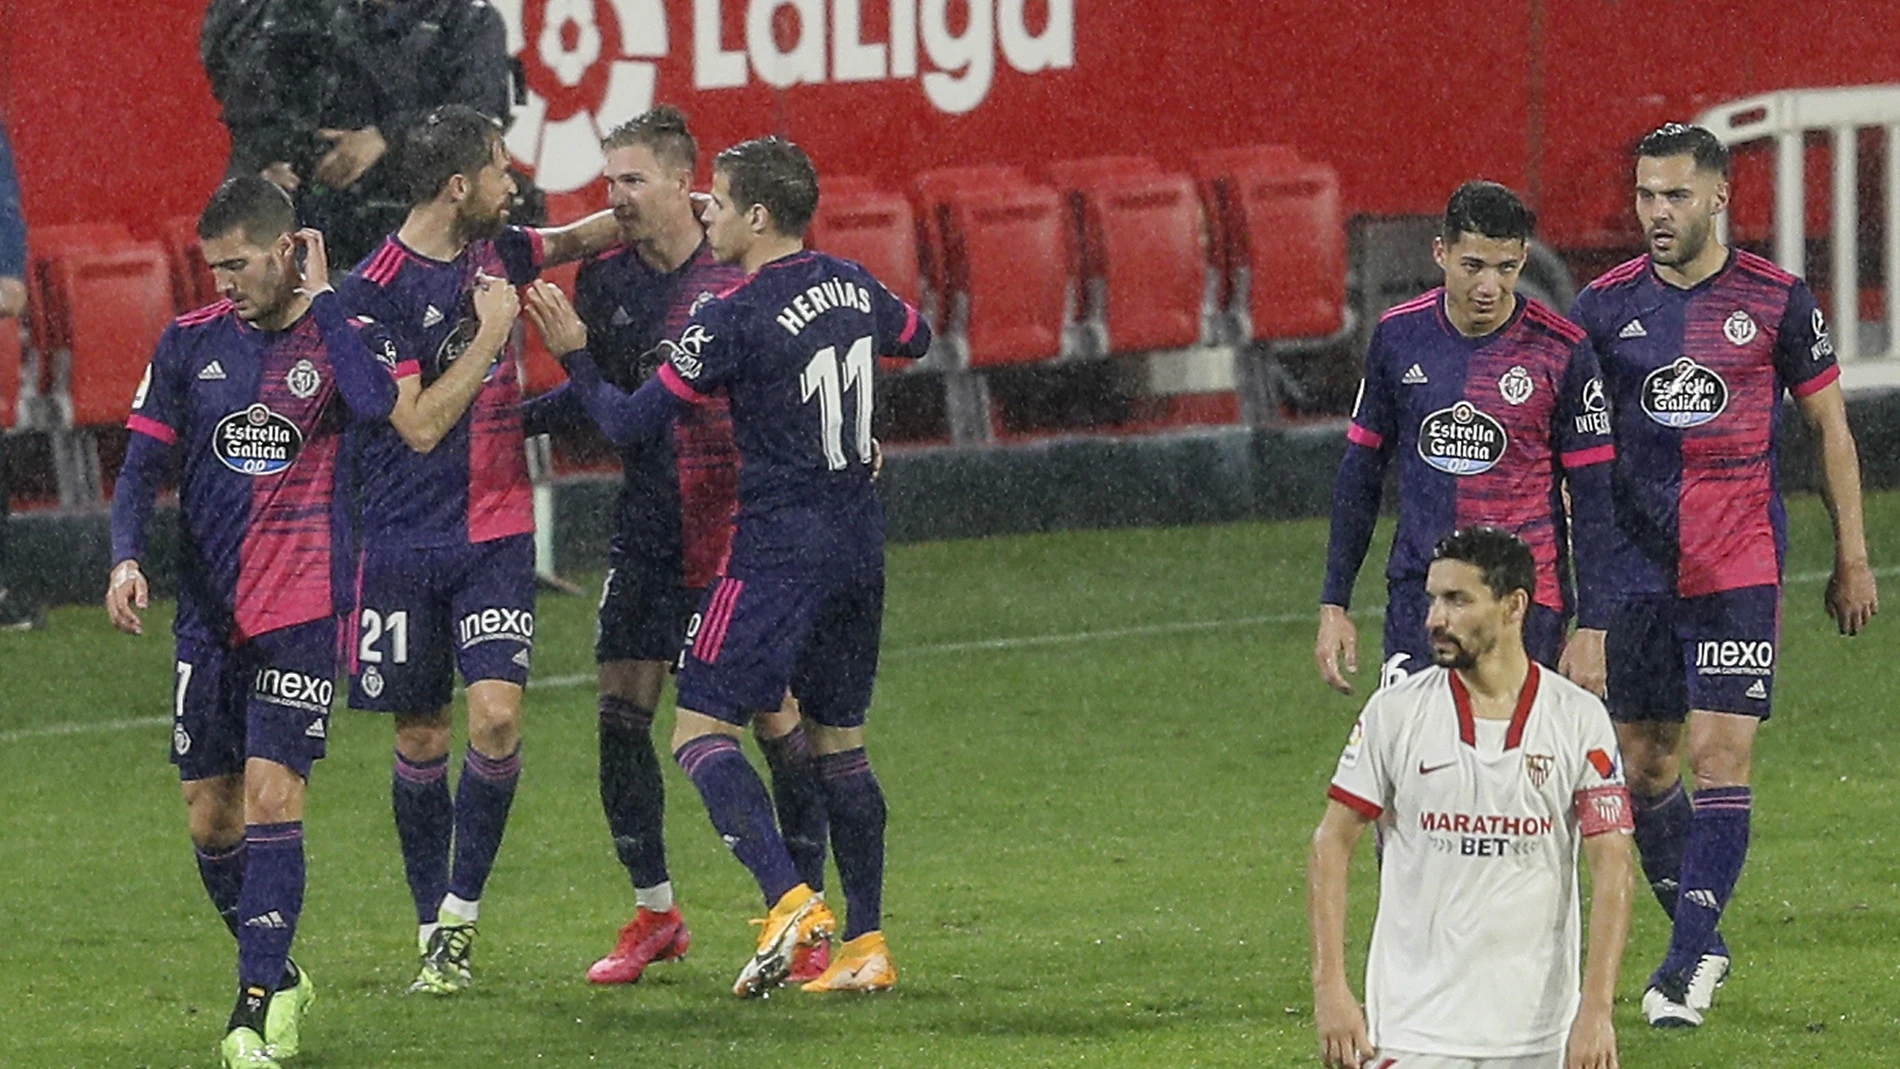 Los jugadores del Valladolid celebran el gol ante el Sevilla, durante el partido de Liga en Primera División disputado esta noche en el estadio Sánchez Pizjuán. EFE/Jose Manuel Vidal